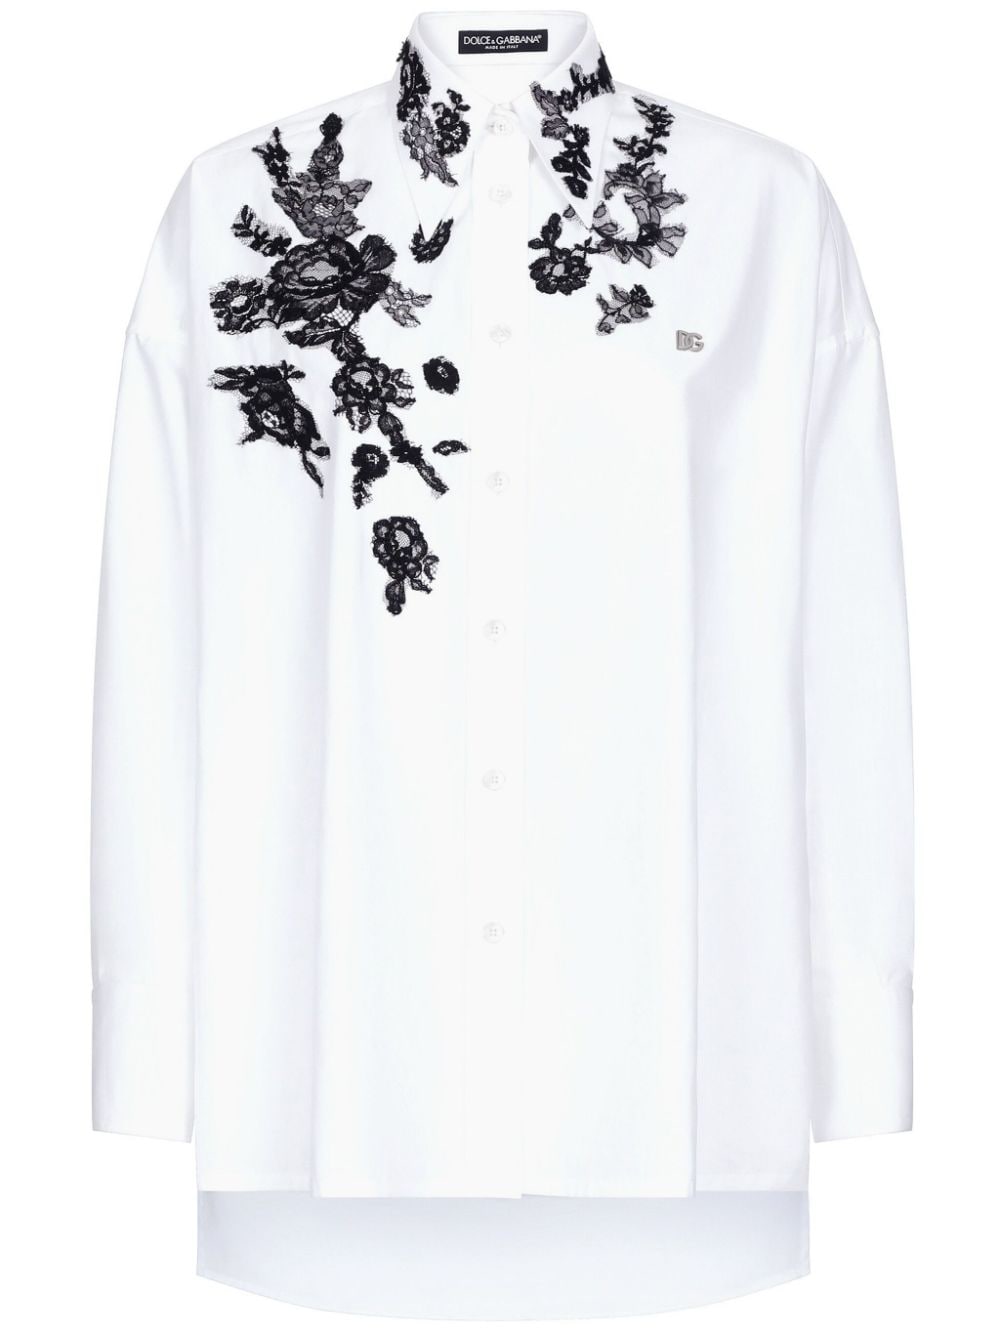 Floral lace appliqué shirt